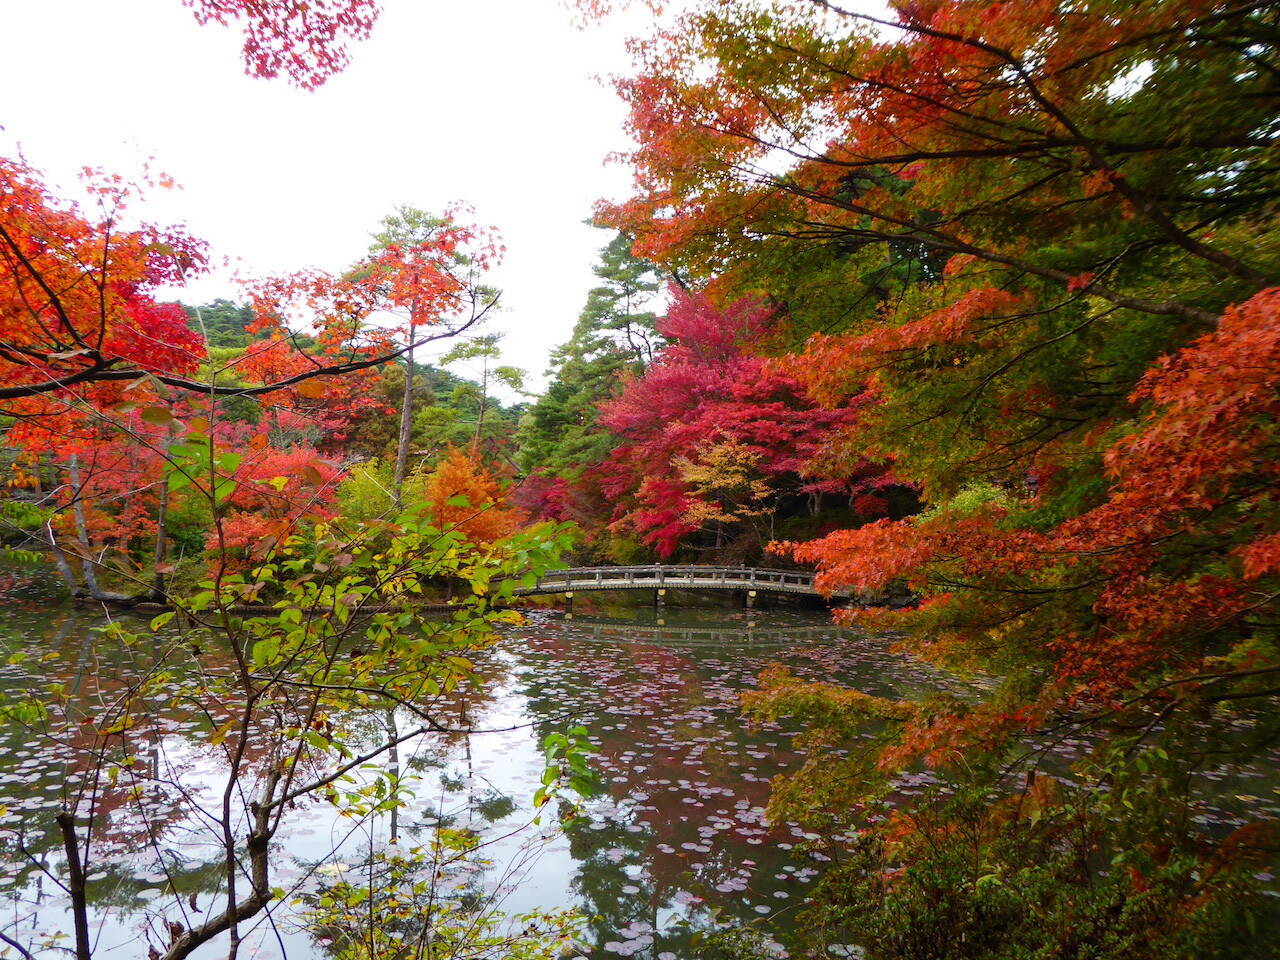 【全国紅葉の絶景】一幅の絵画のような、兵庫県の紅葉人気スポット